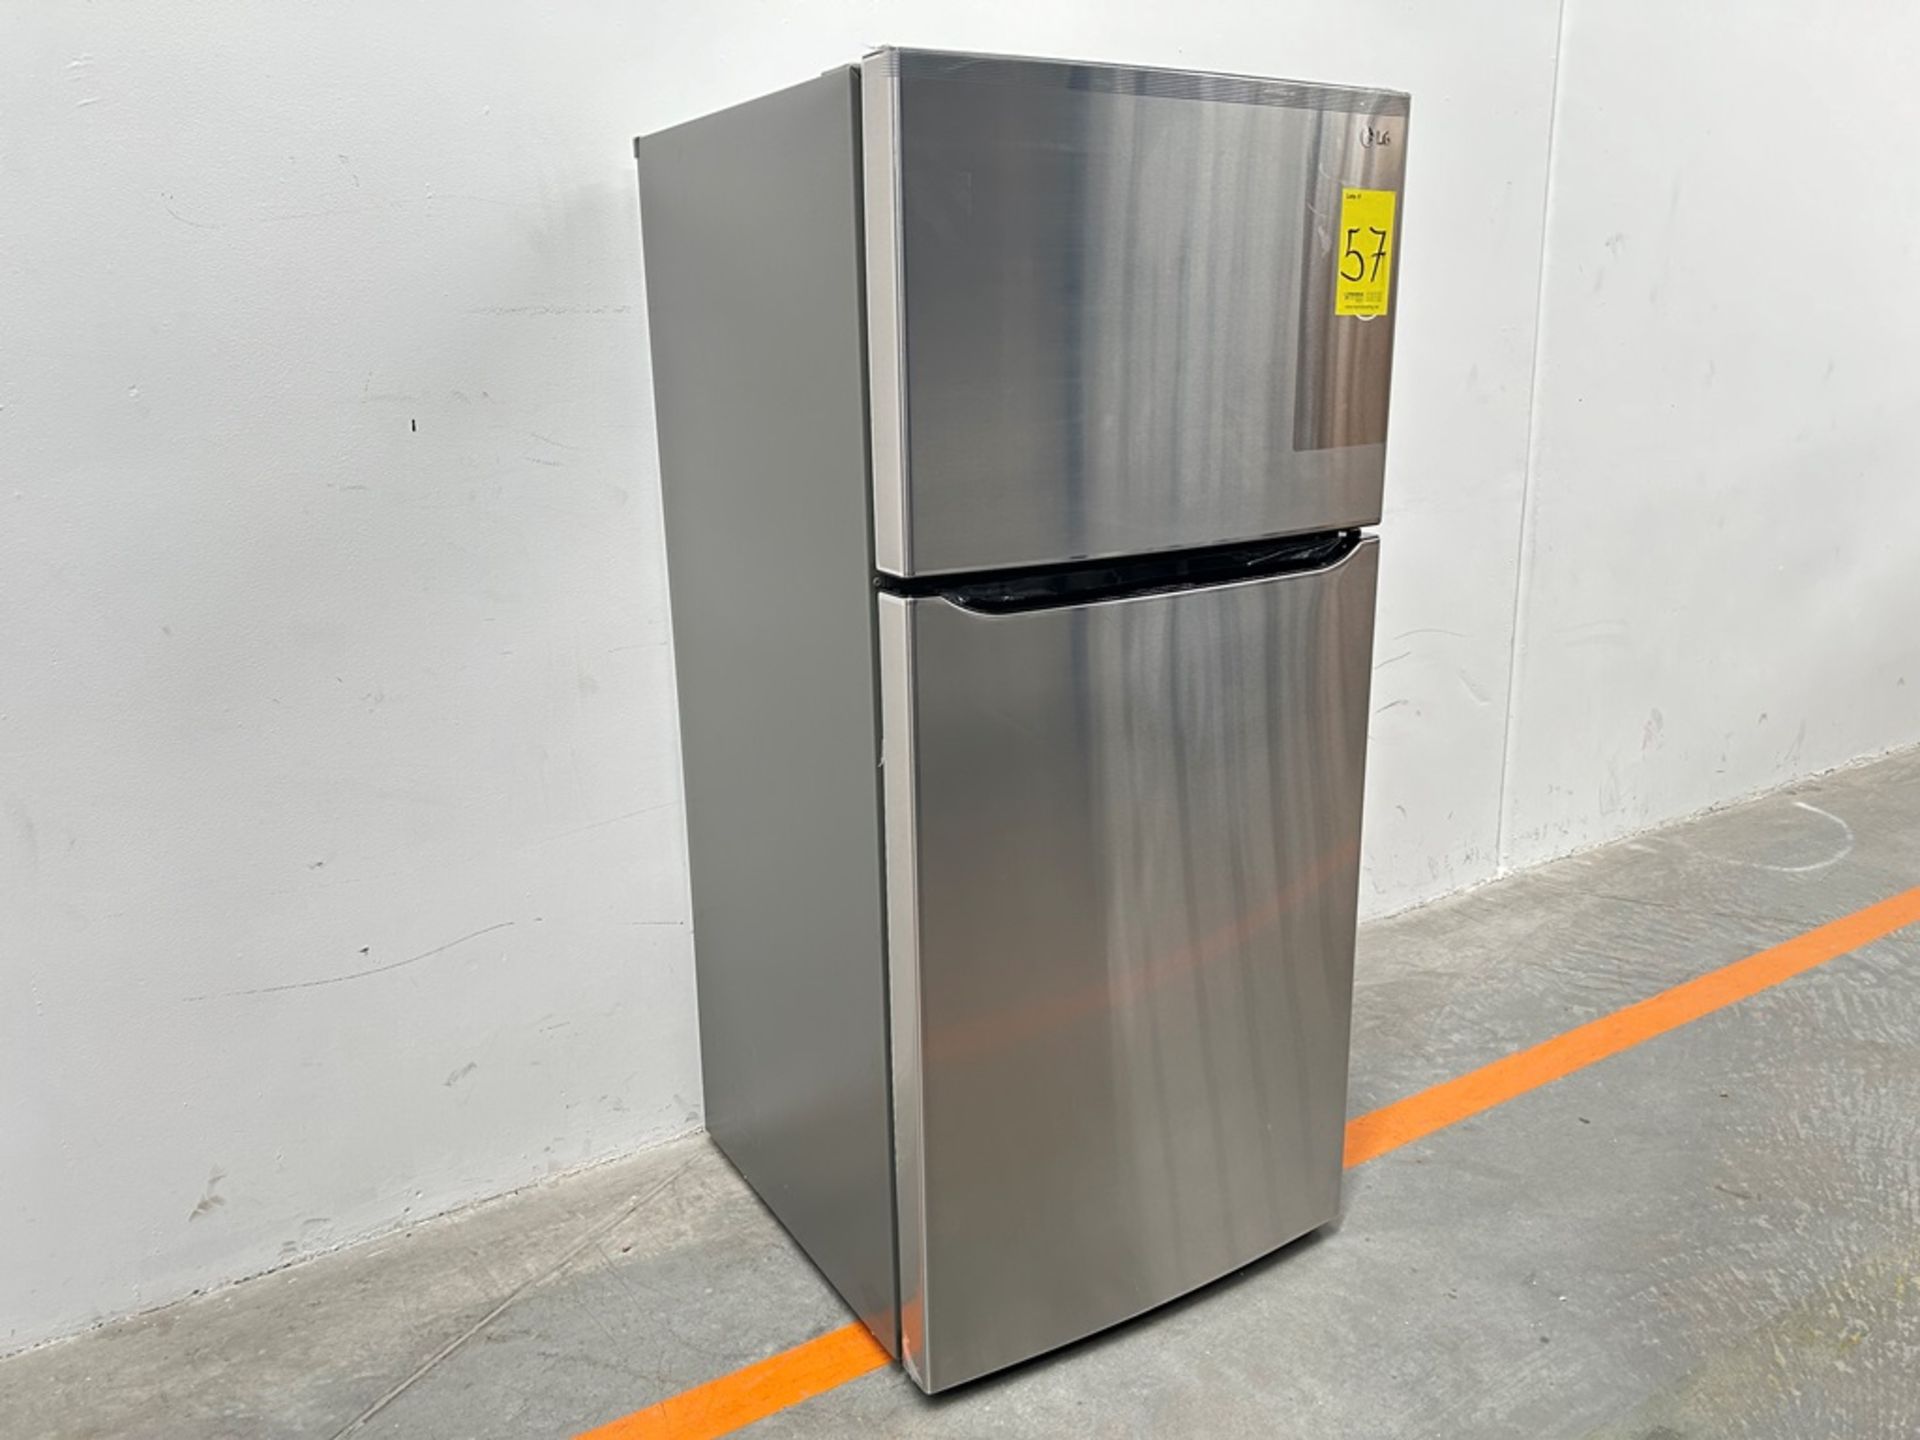 (NUEVO) Refrigerador Marca LG, Modelo LT57BPSX, Serie 2D689, Color GRIS - Image 3 of 7